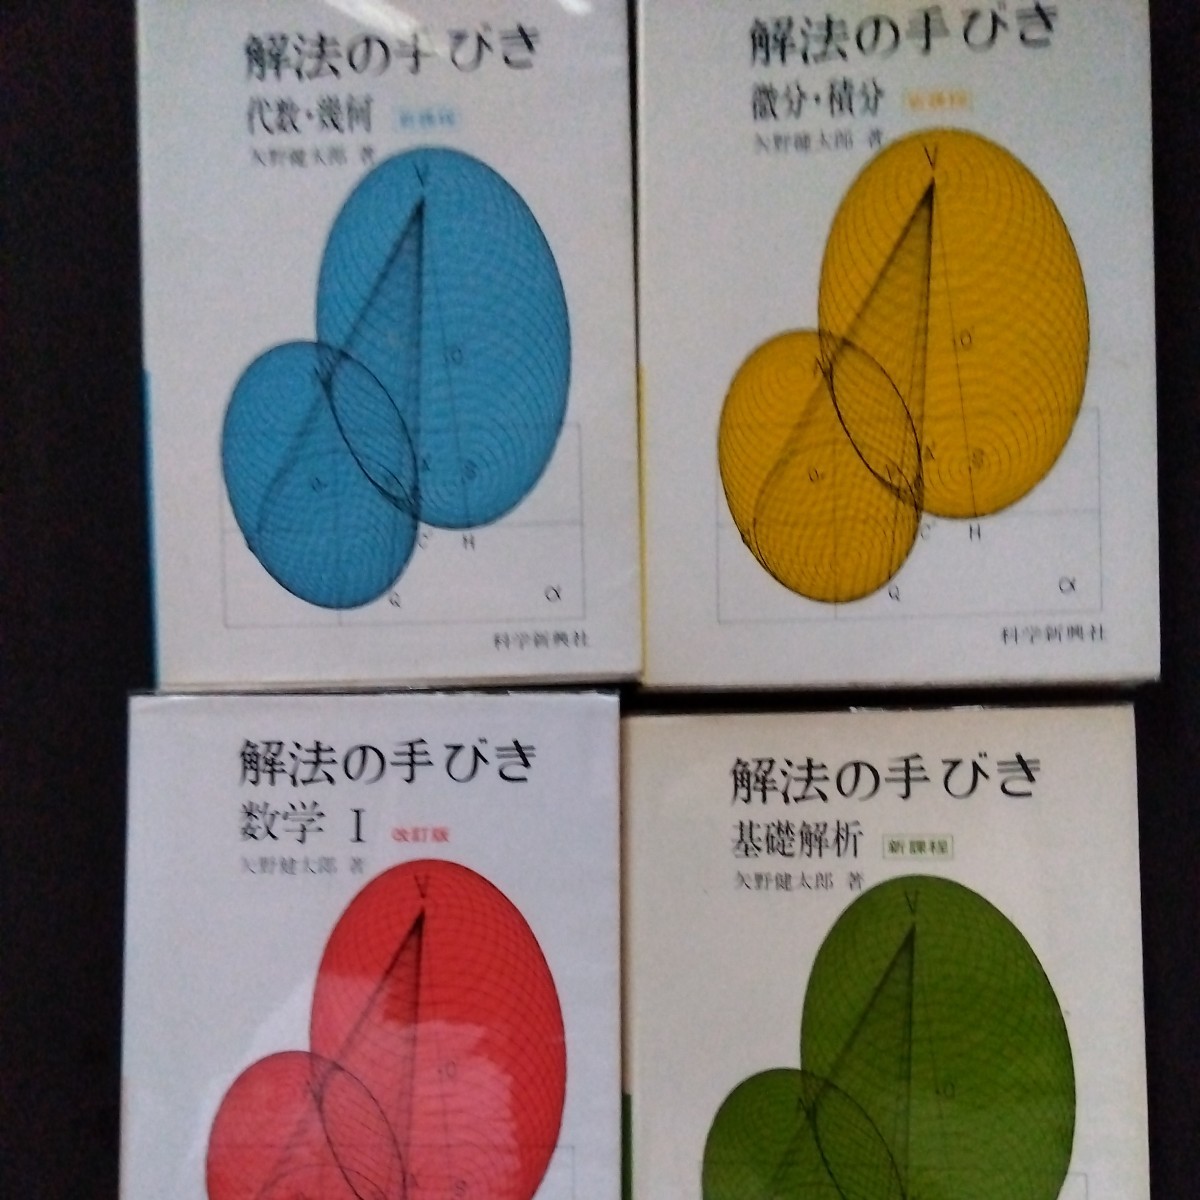 矢野健太郎数学参考書 科学新興社 数学の手引き 数学Ⅰ 基礎解析 代数